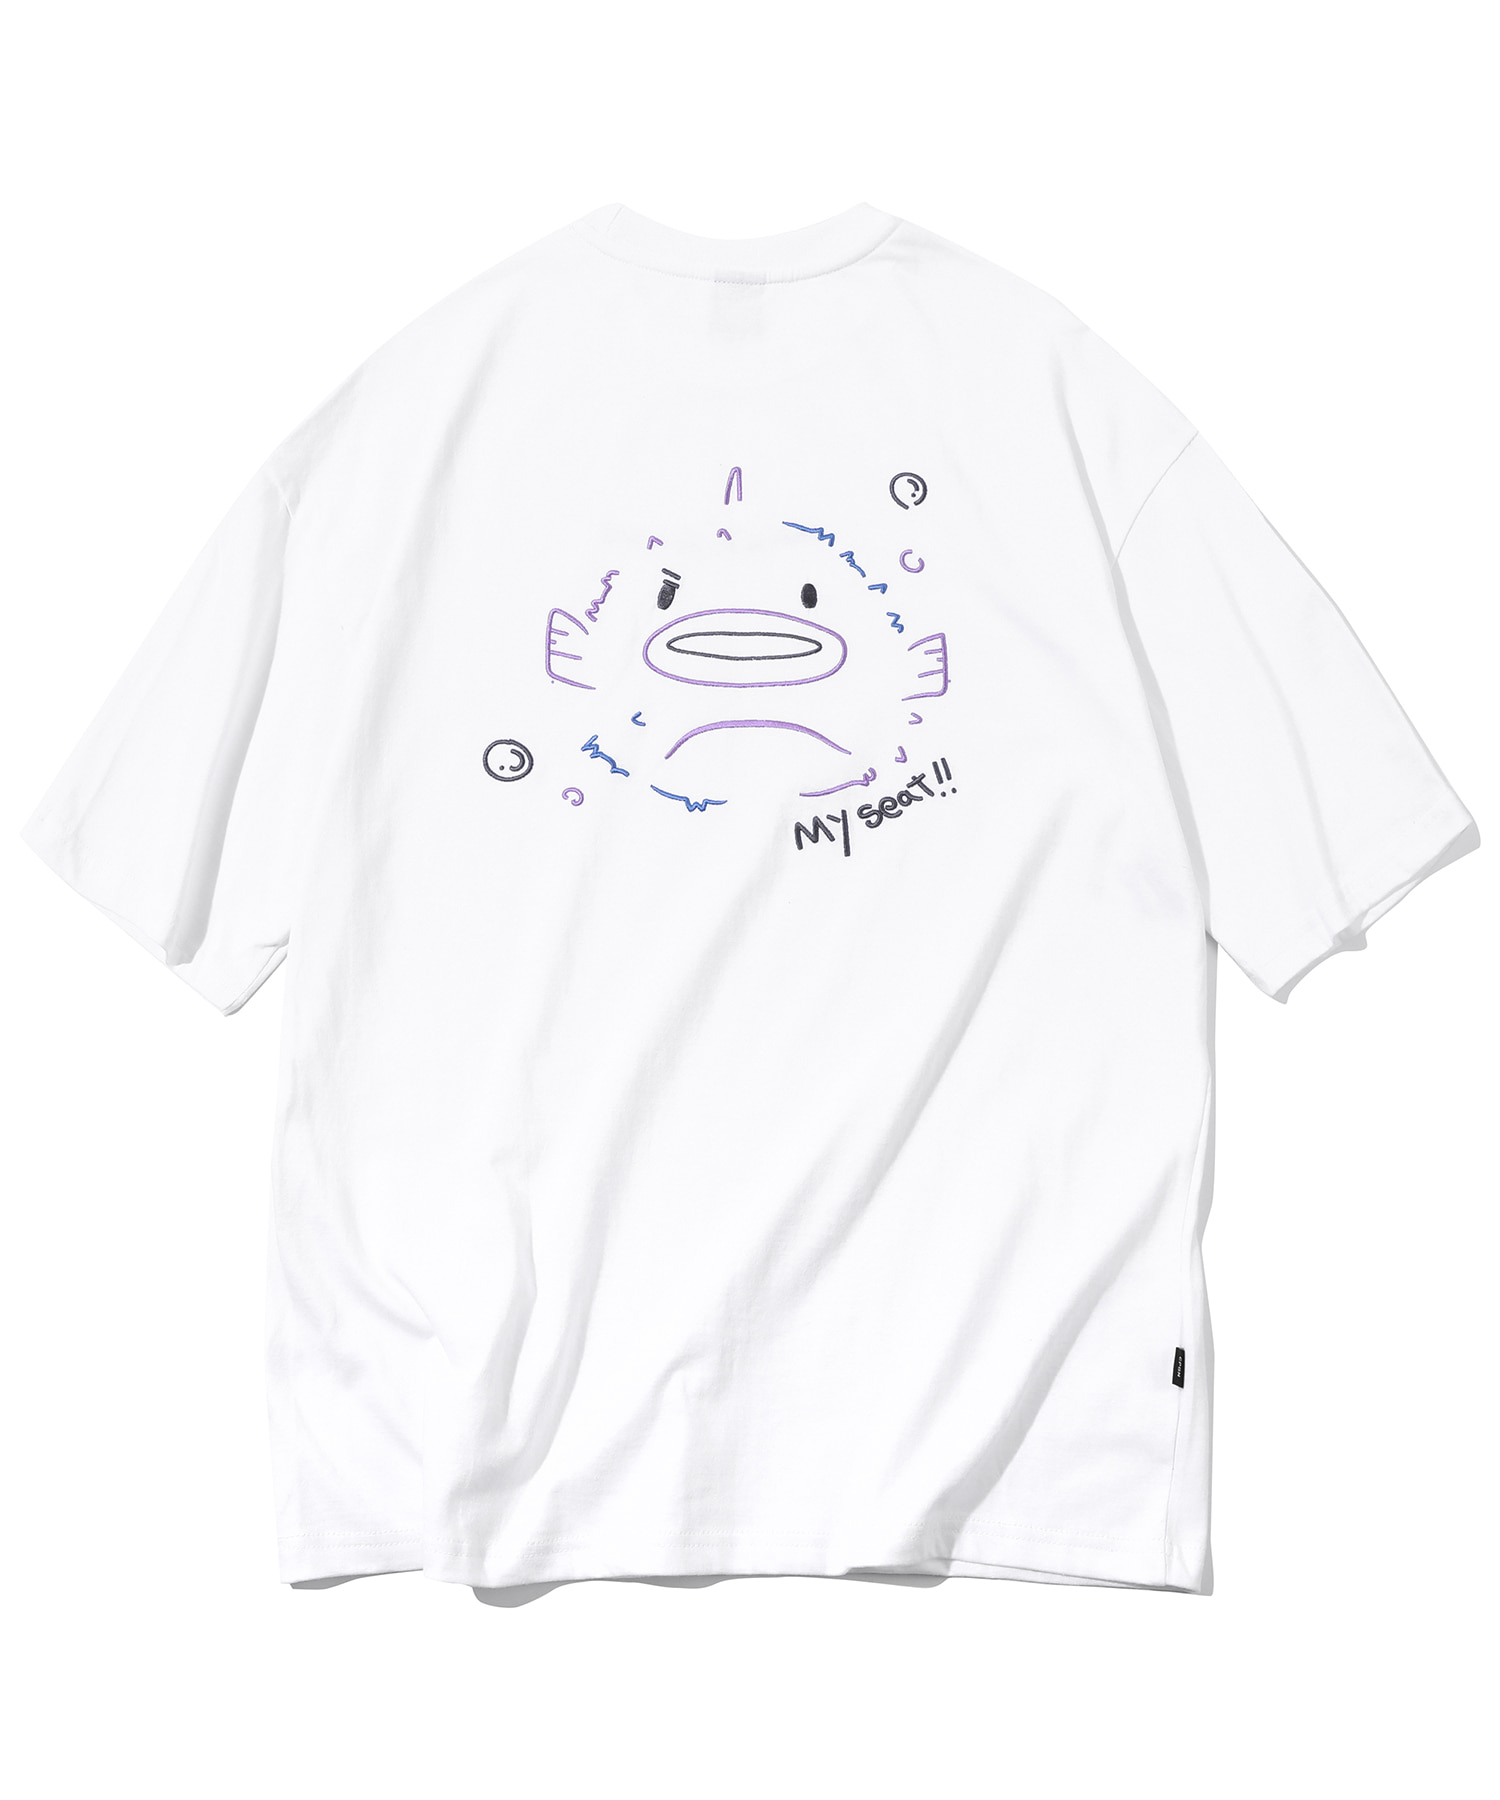 韓國CPGN STUDIO - Blowfish Embroidery Short Sleeve T-shirt White